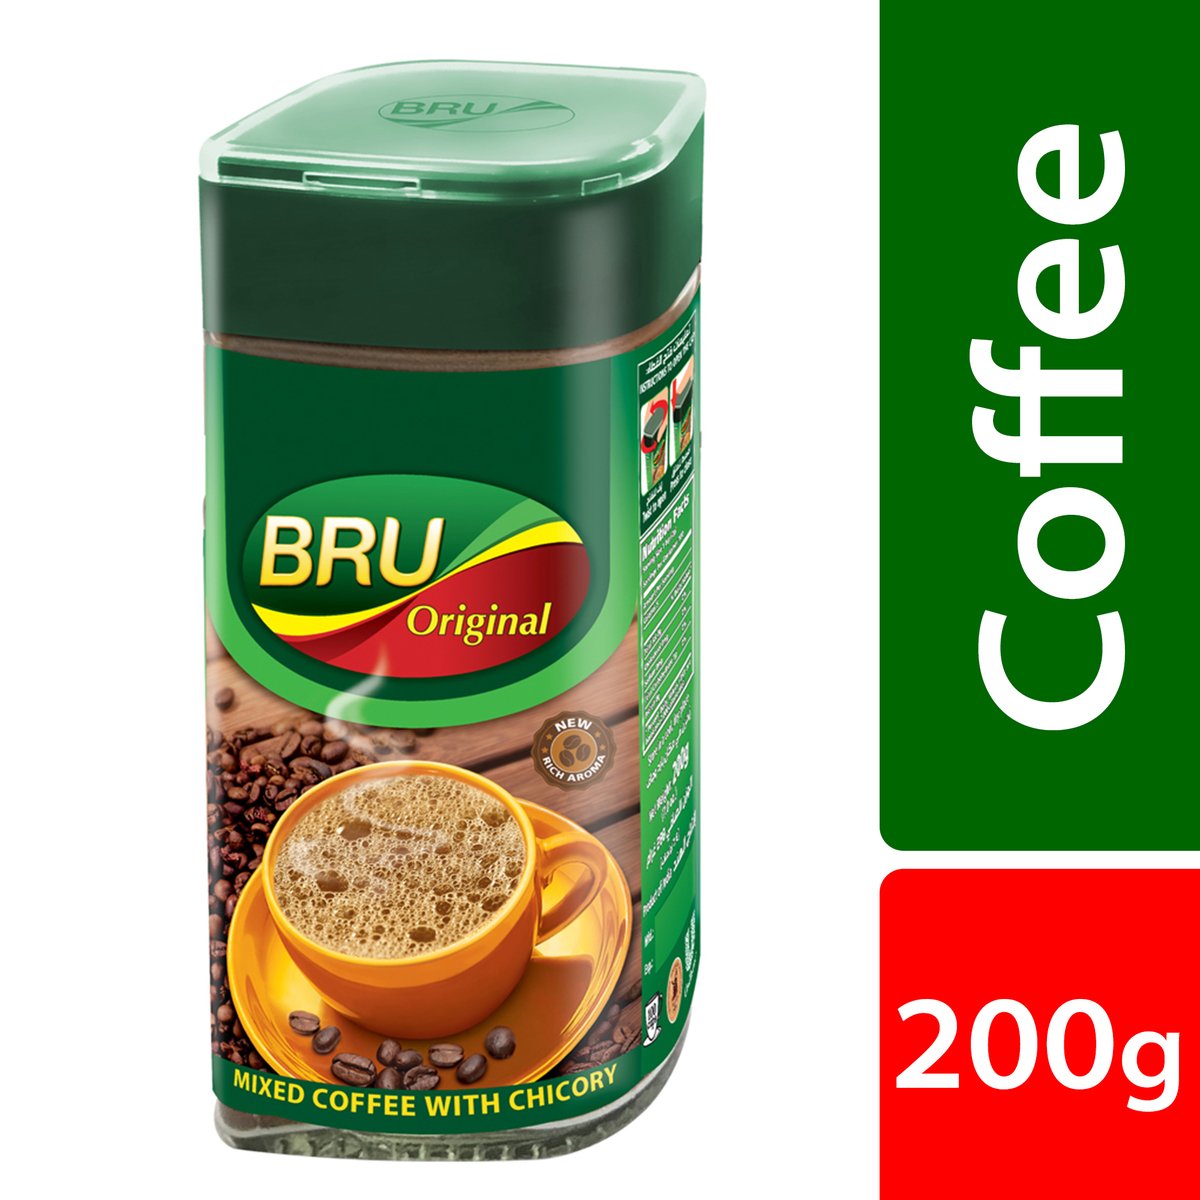 Buy Bru Original Instant Coffee 200 g Online at Best Price | Coffee | Lulu Kuwait in UAE